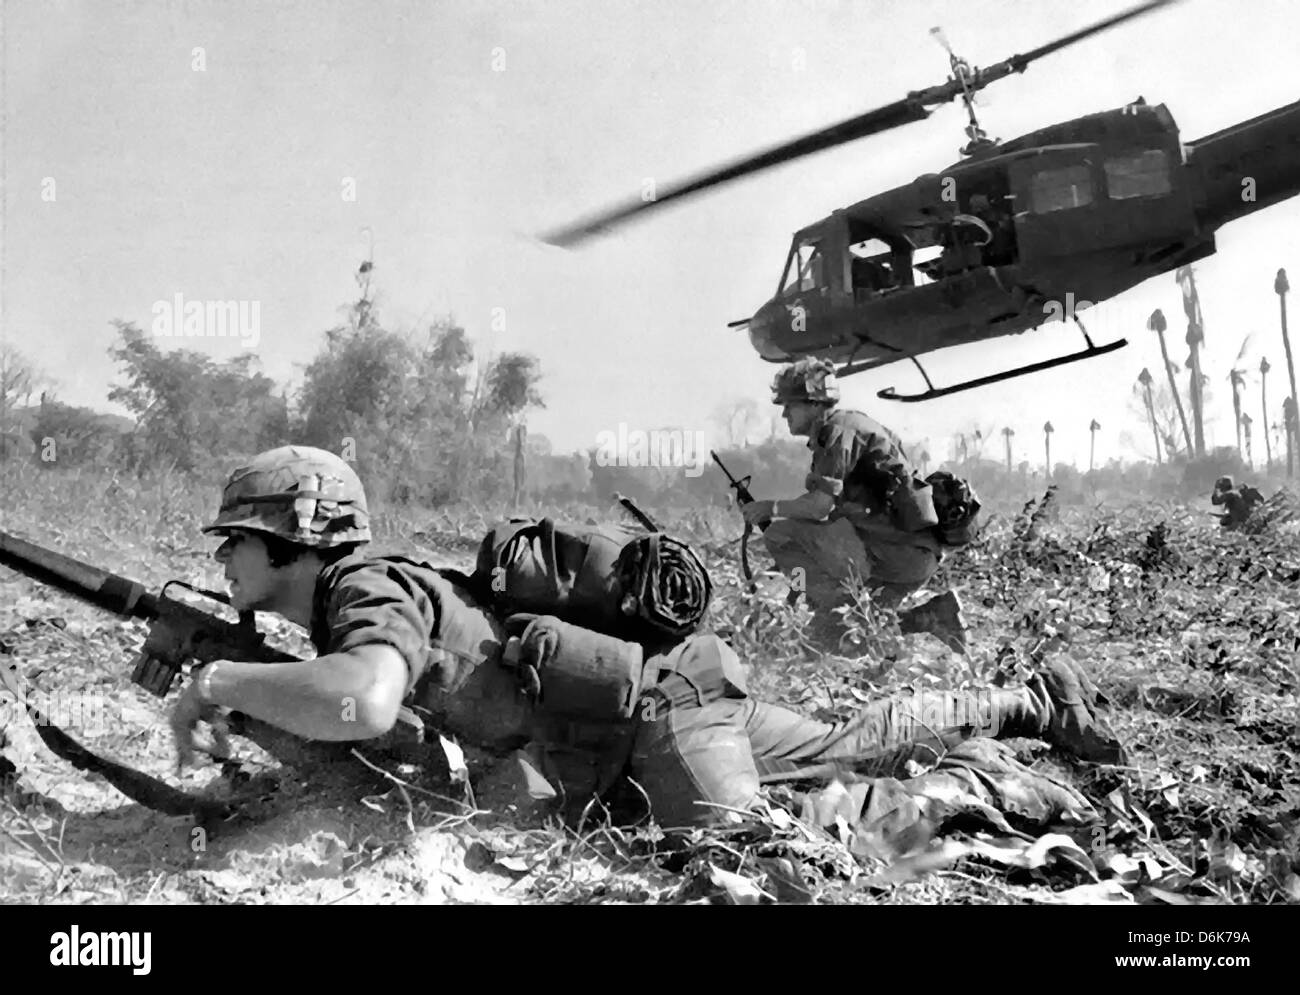 US Army Major Bruce Crandall fliegt seine UH - 1D Hubschrauber nach dem Entladen einer Belastung von Infanteristen auf die Suche and destroy-Mission 14. November 1965 während der Schlacht von Ia Drang, Vietnam. Stockfoto